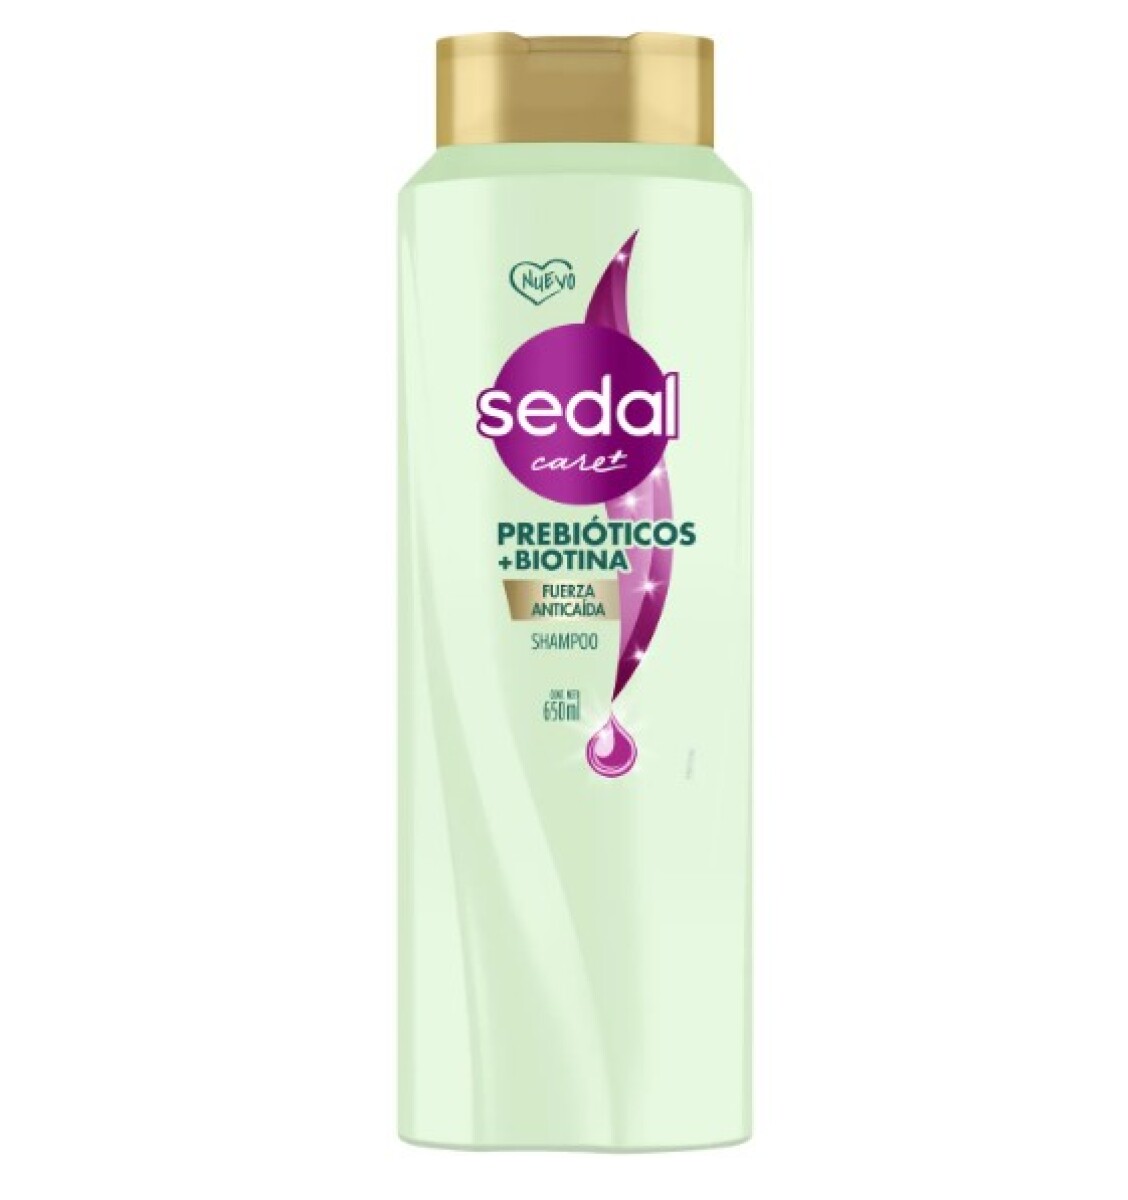 Sedal shampoo 650 ml - Prebióticos + Biotina 